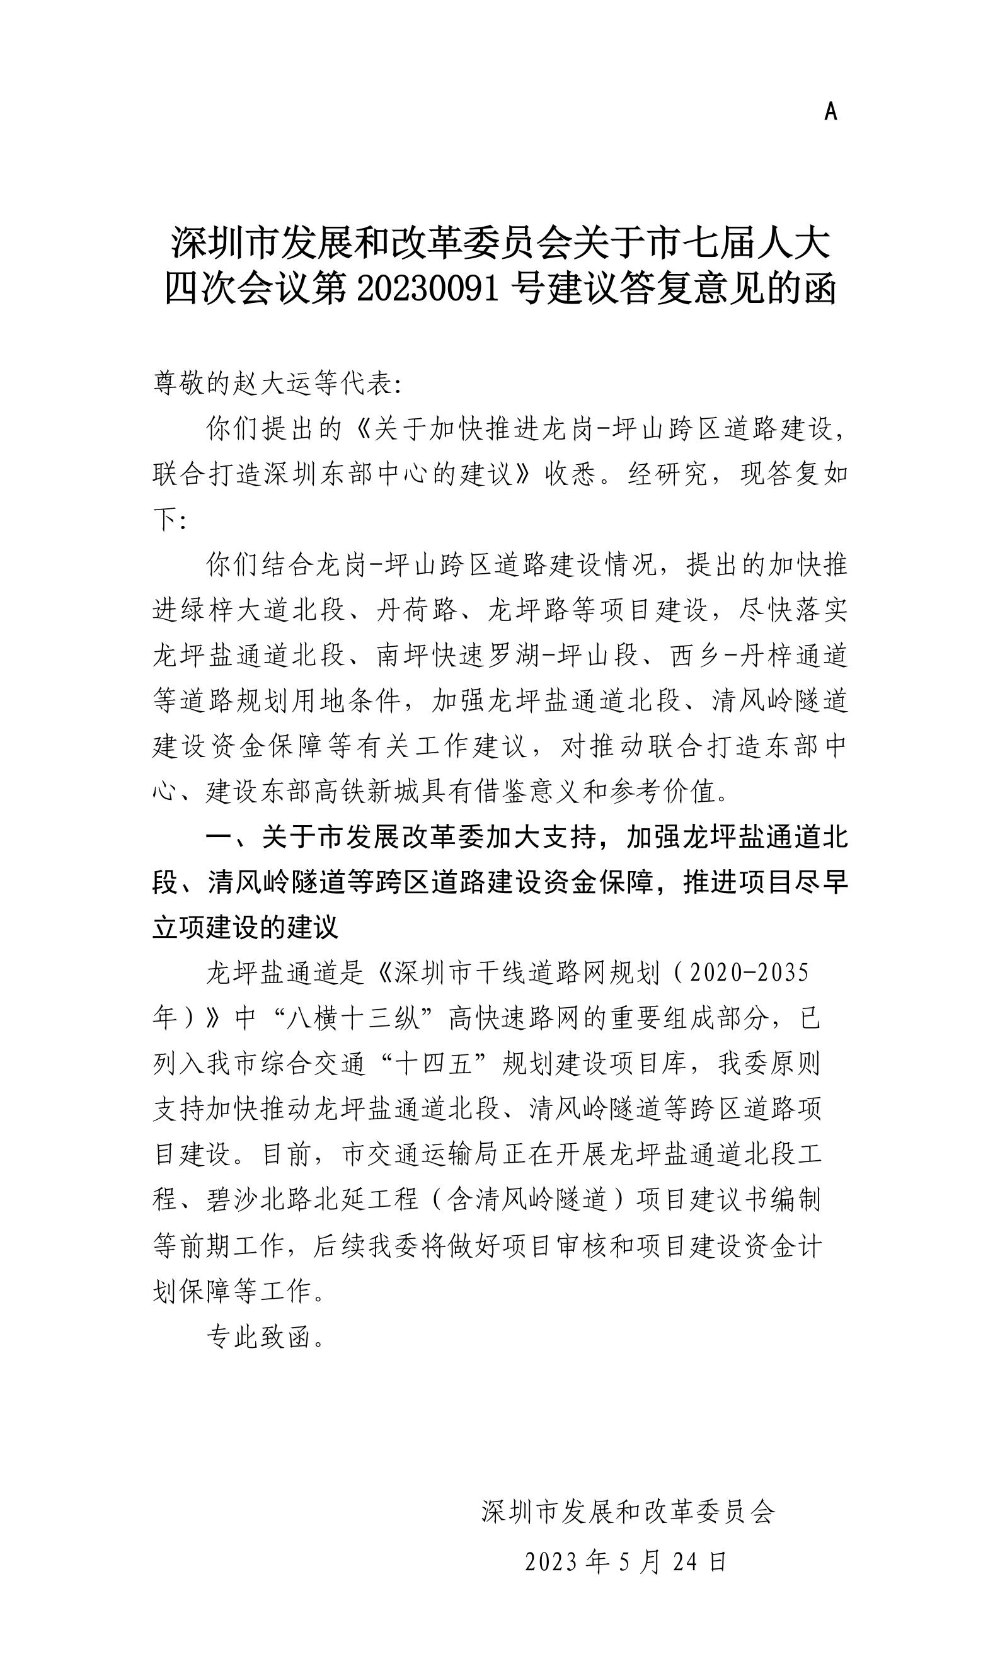 深圳市发展和改革委员会关于市七届人大四次会议第20230091号建议答复意见的函.jpg